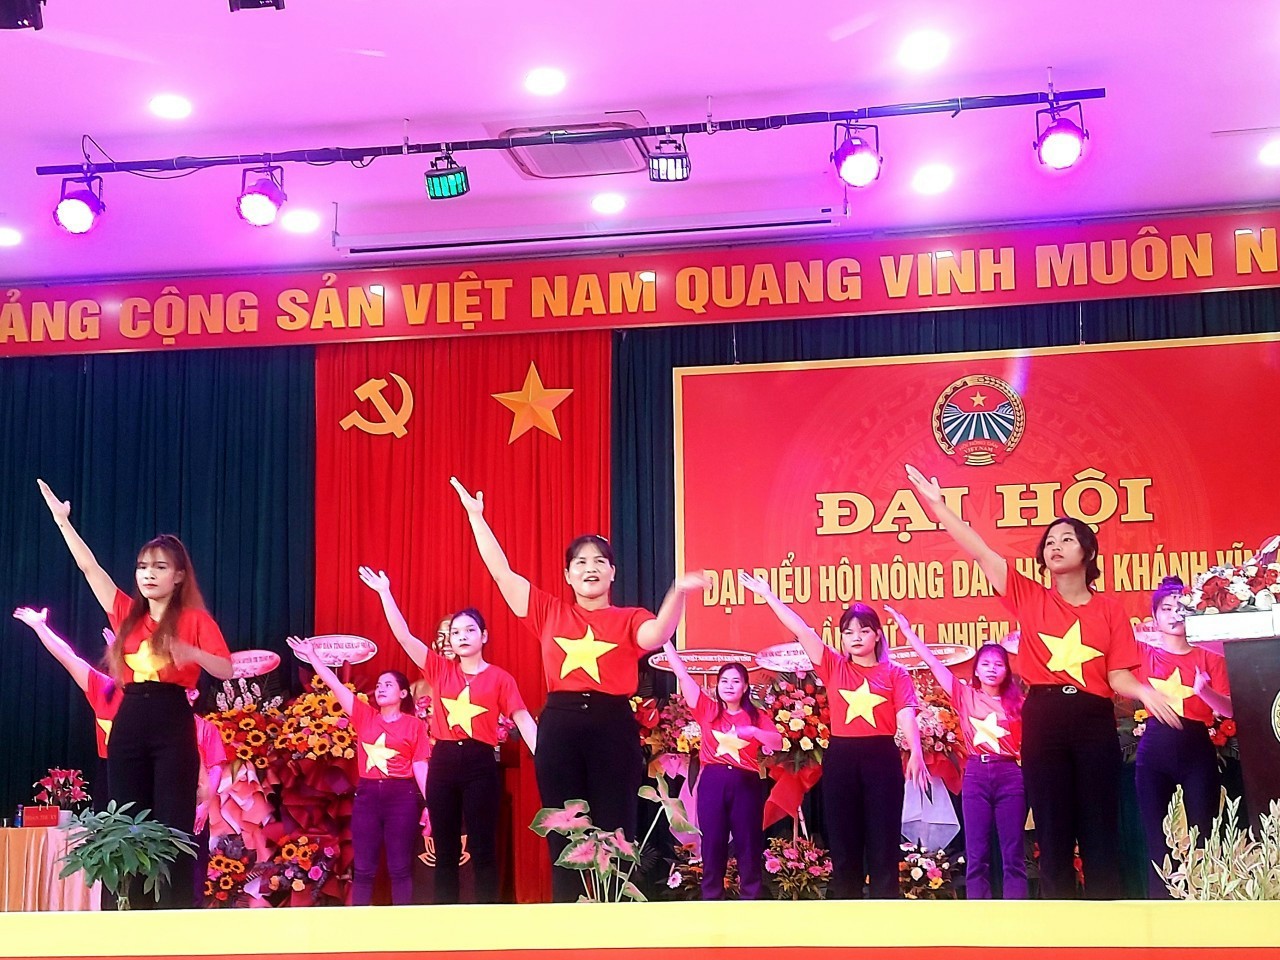 Huyện miền núi đầu tiên ở Khánh Hòa đã tổ chức thành công Đại hội nông dân - Ảnh 2.